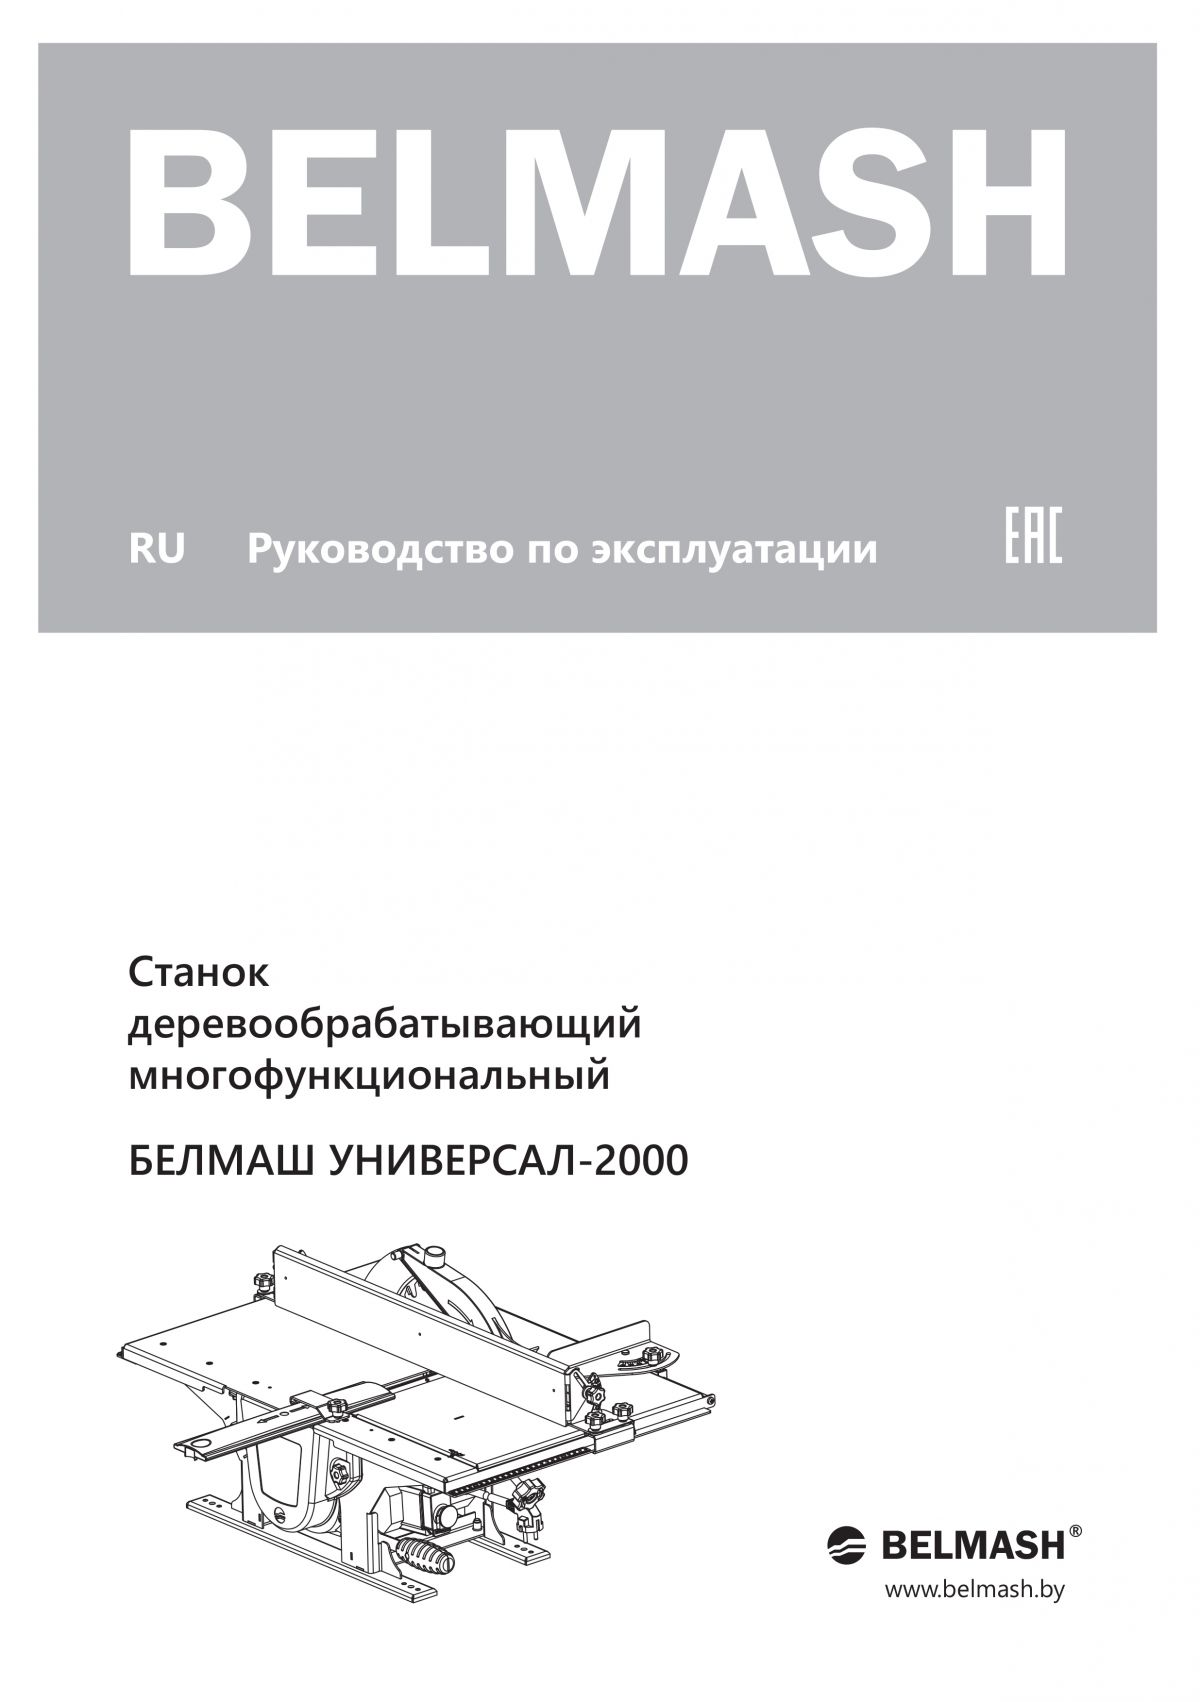 Руководство по эксплуатации для станка УНИВЕРСАЛ-2000 (русский язык)